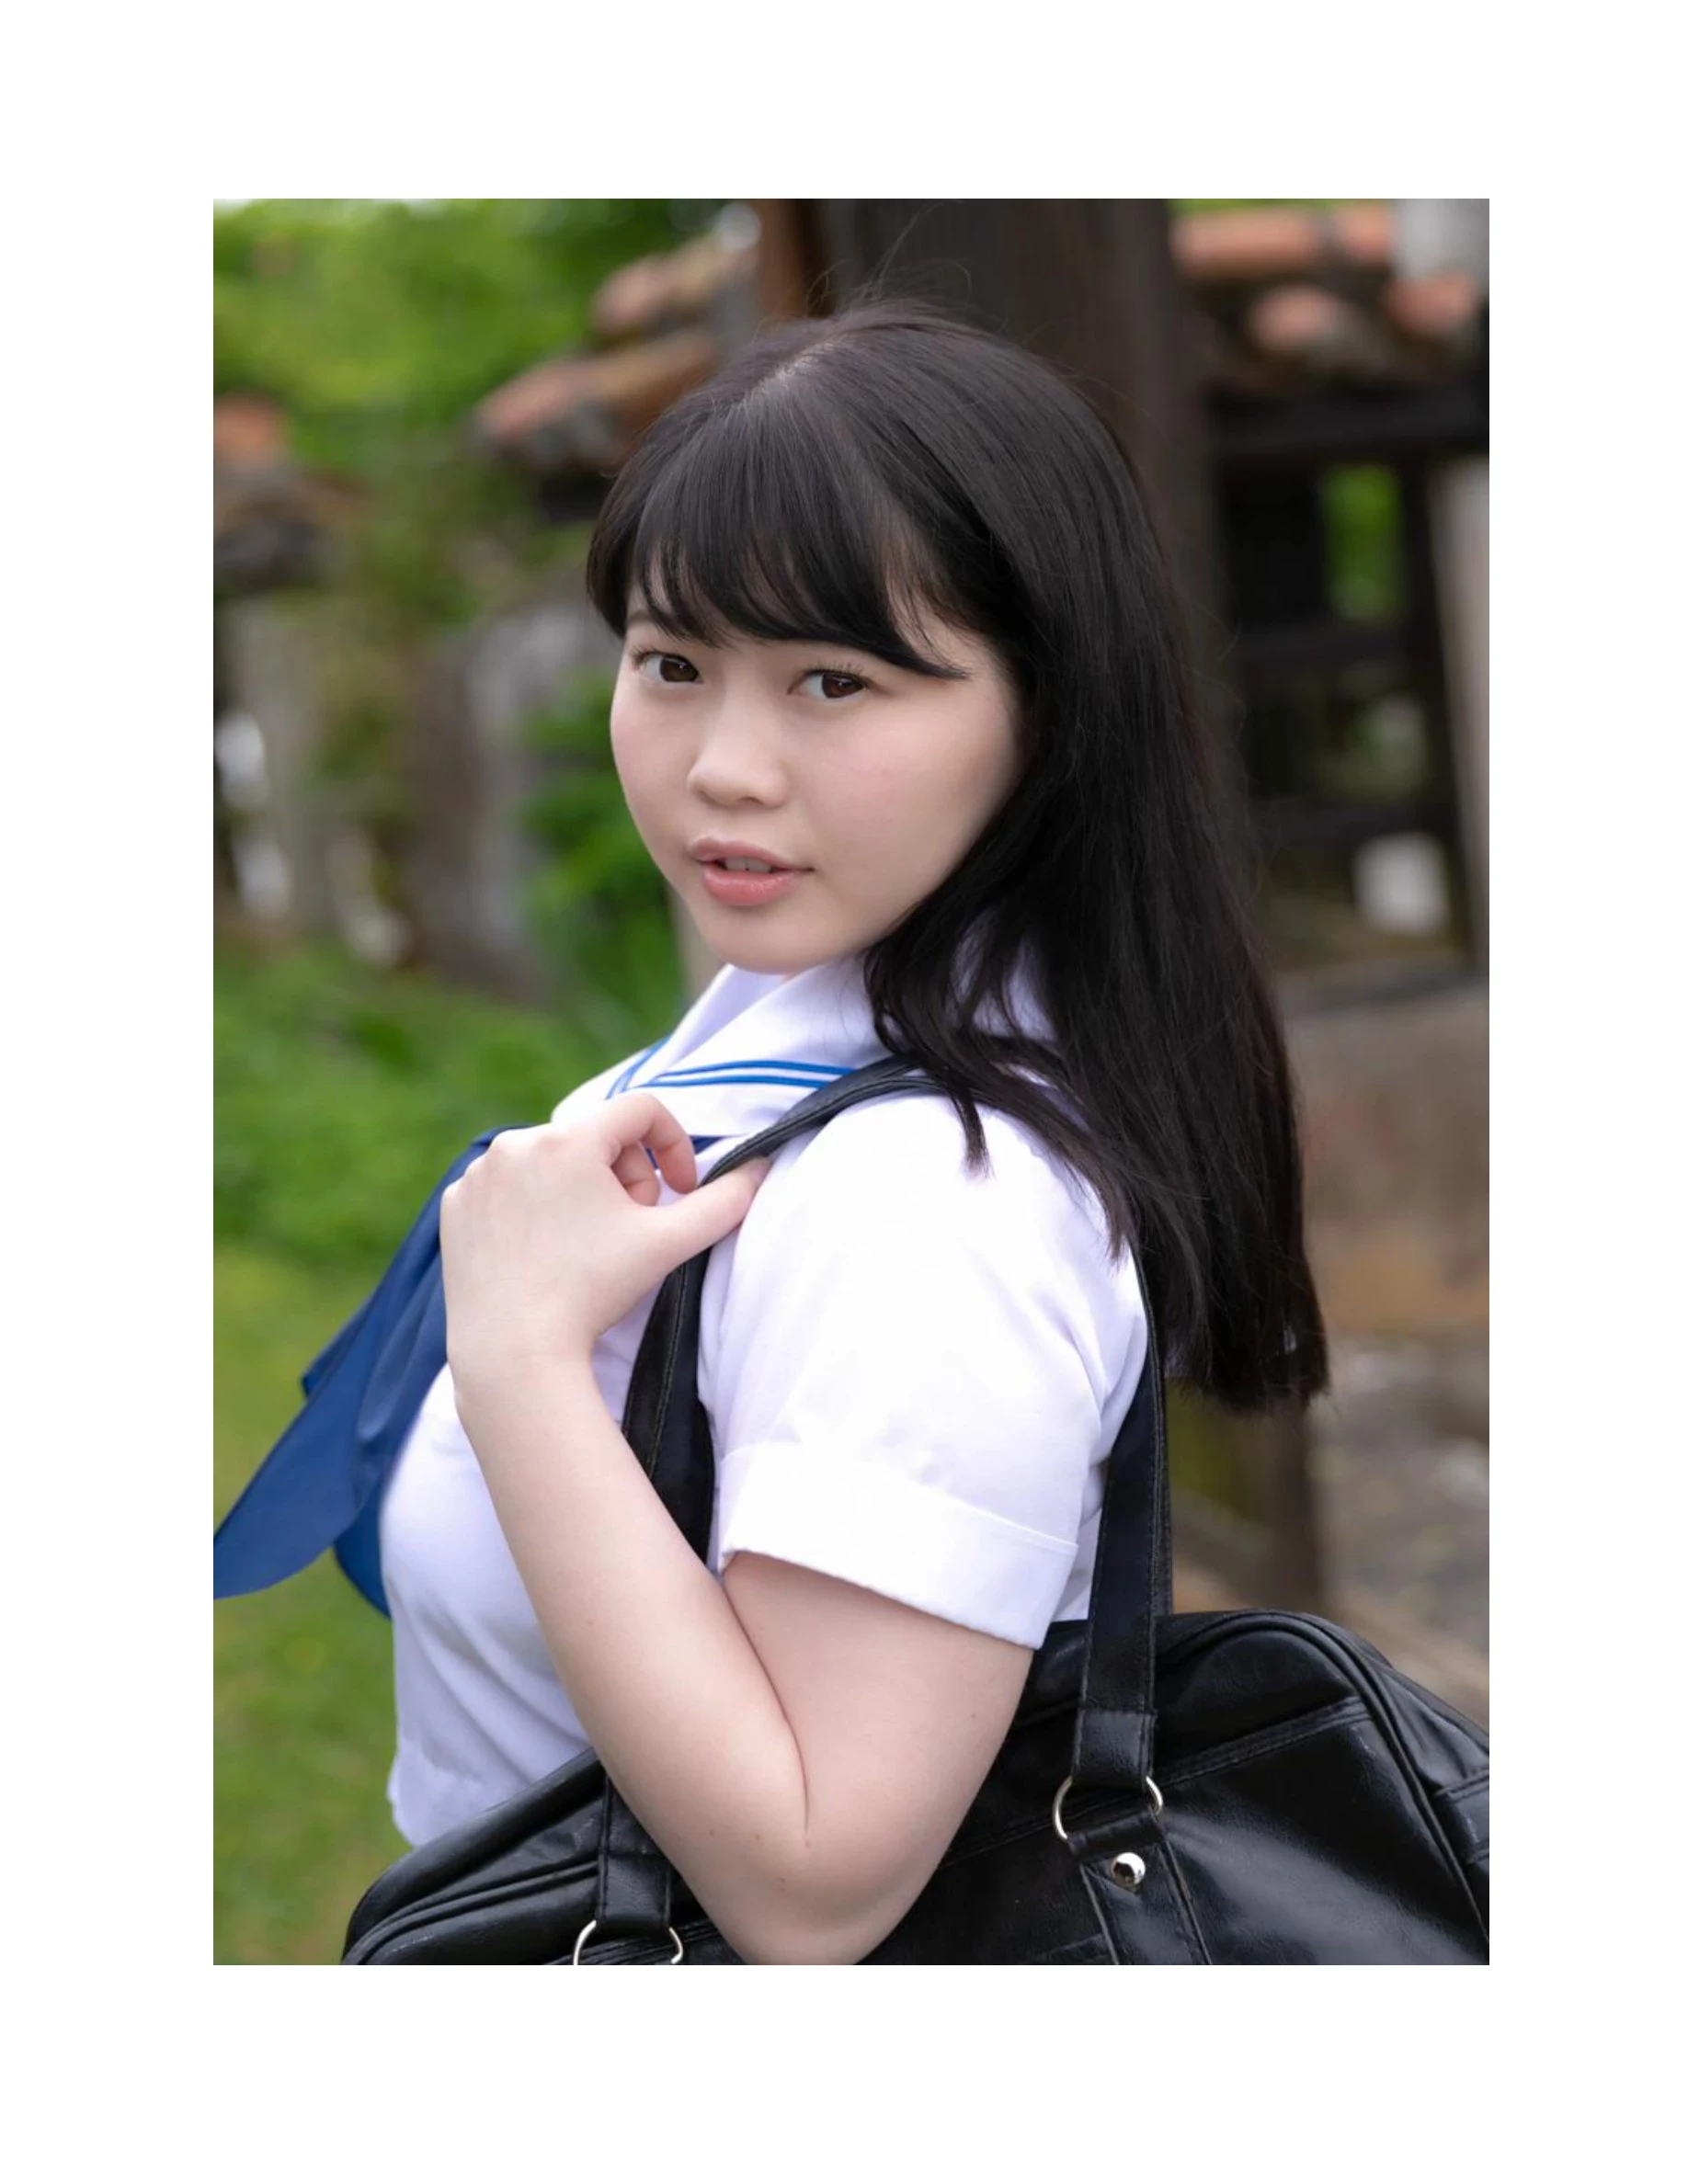 伊川愛梨 卒業旅行 夏 寫真集 J罩杯偶像美少女傳説-15